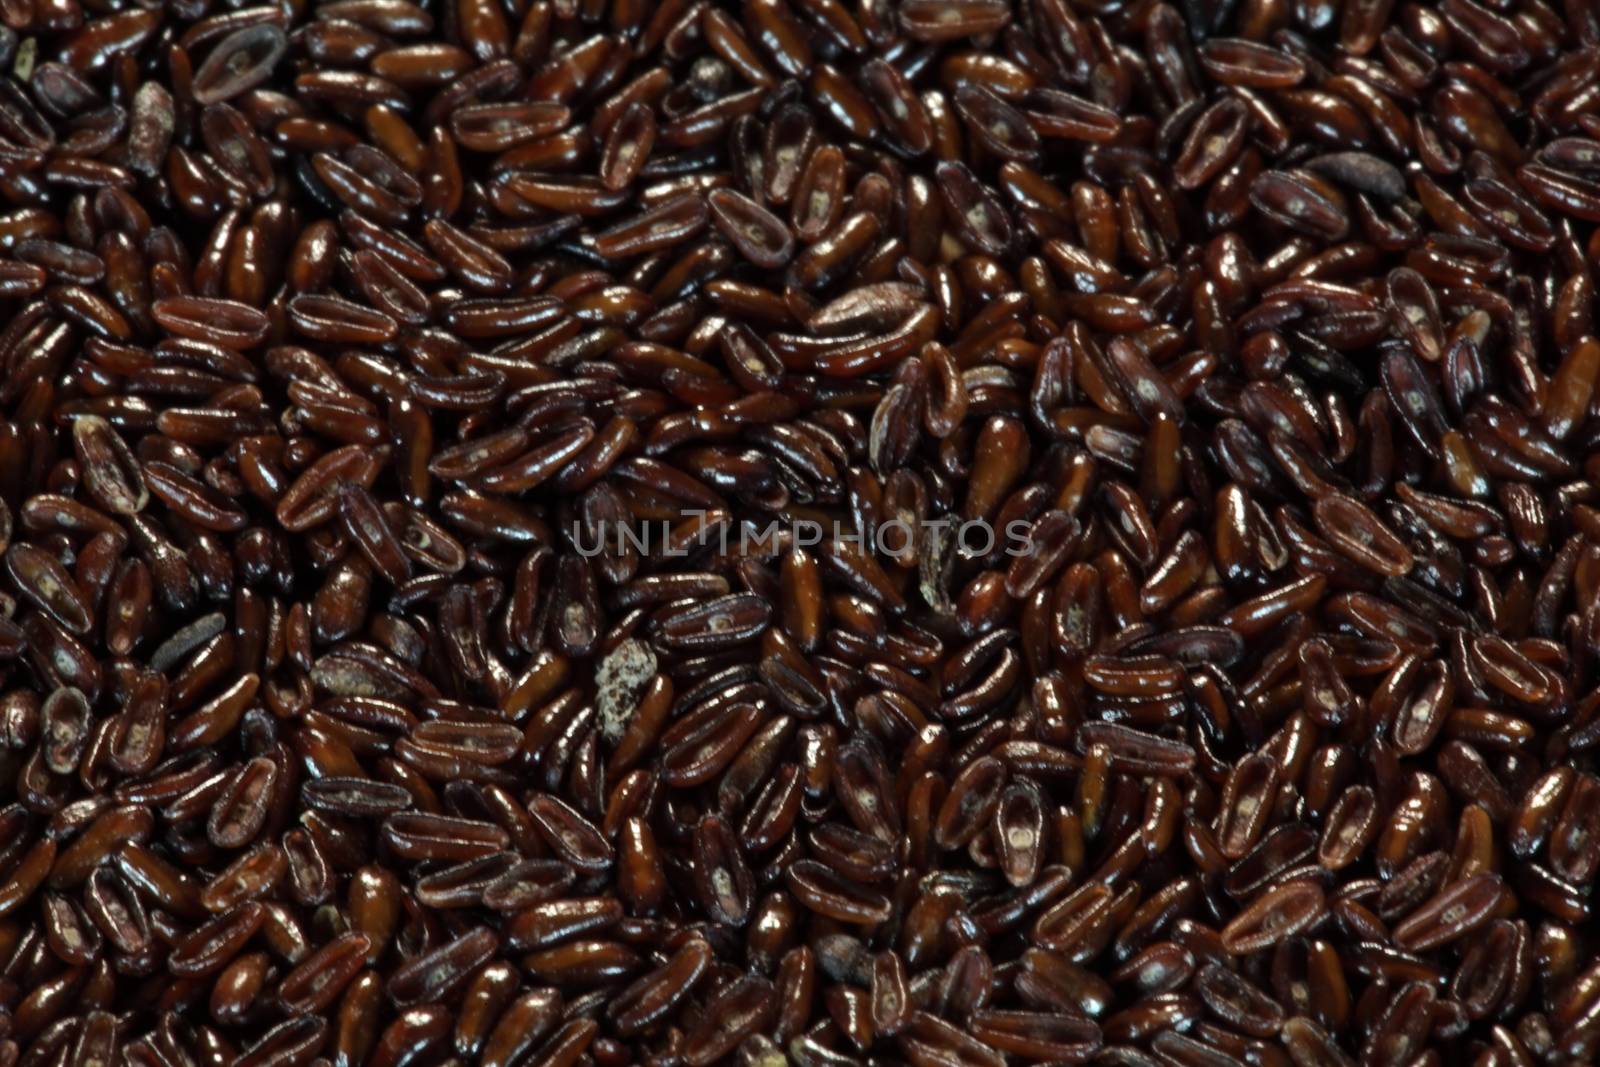 A macro photo of psyllium seed husks (Plantago ovata).